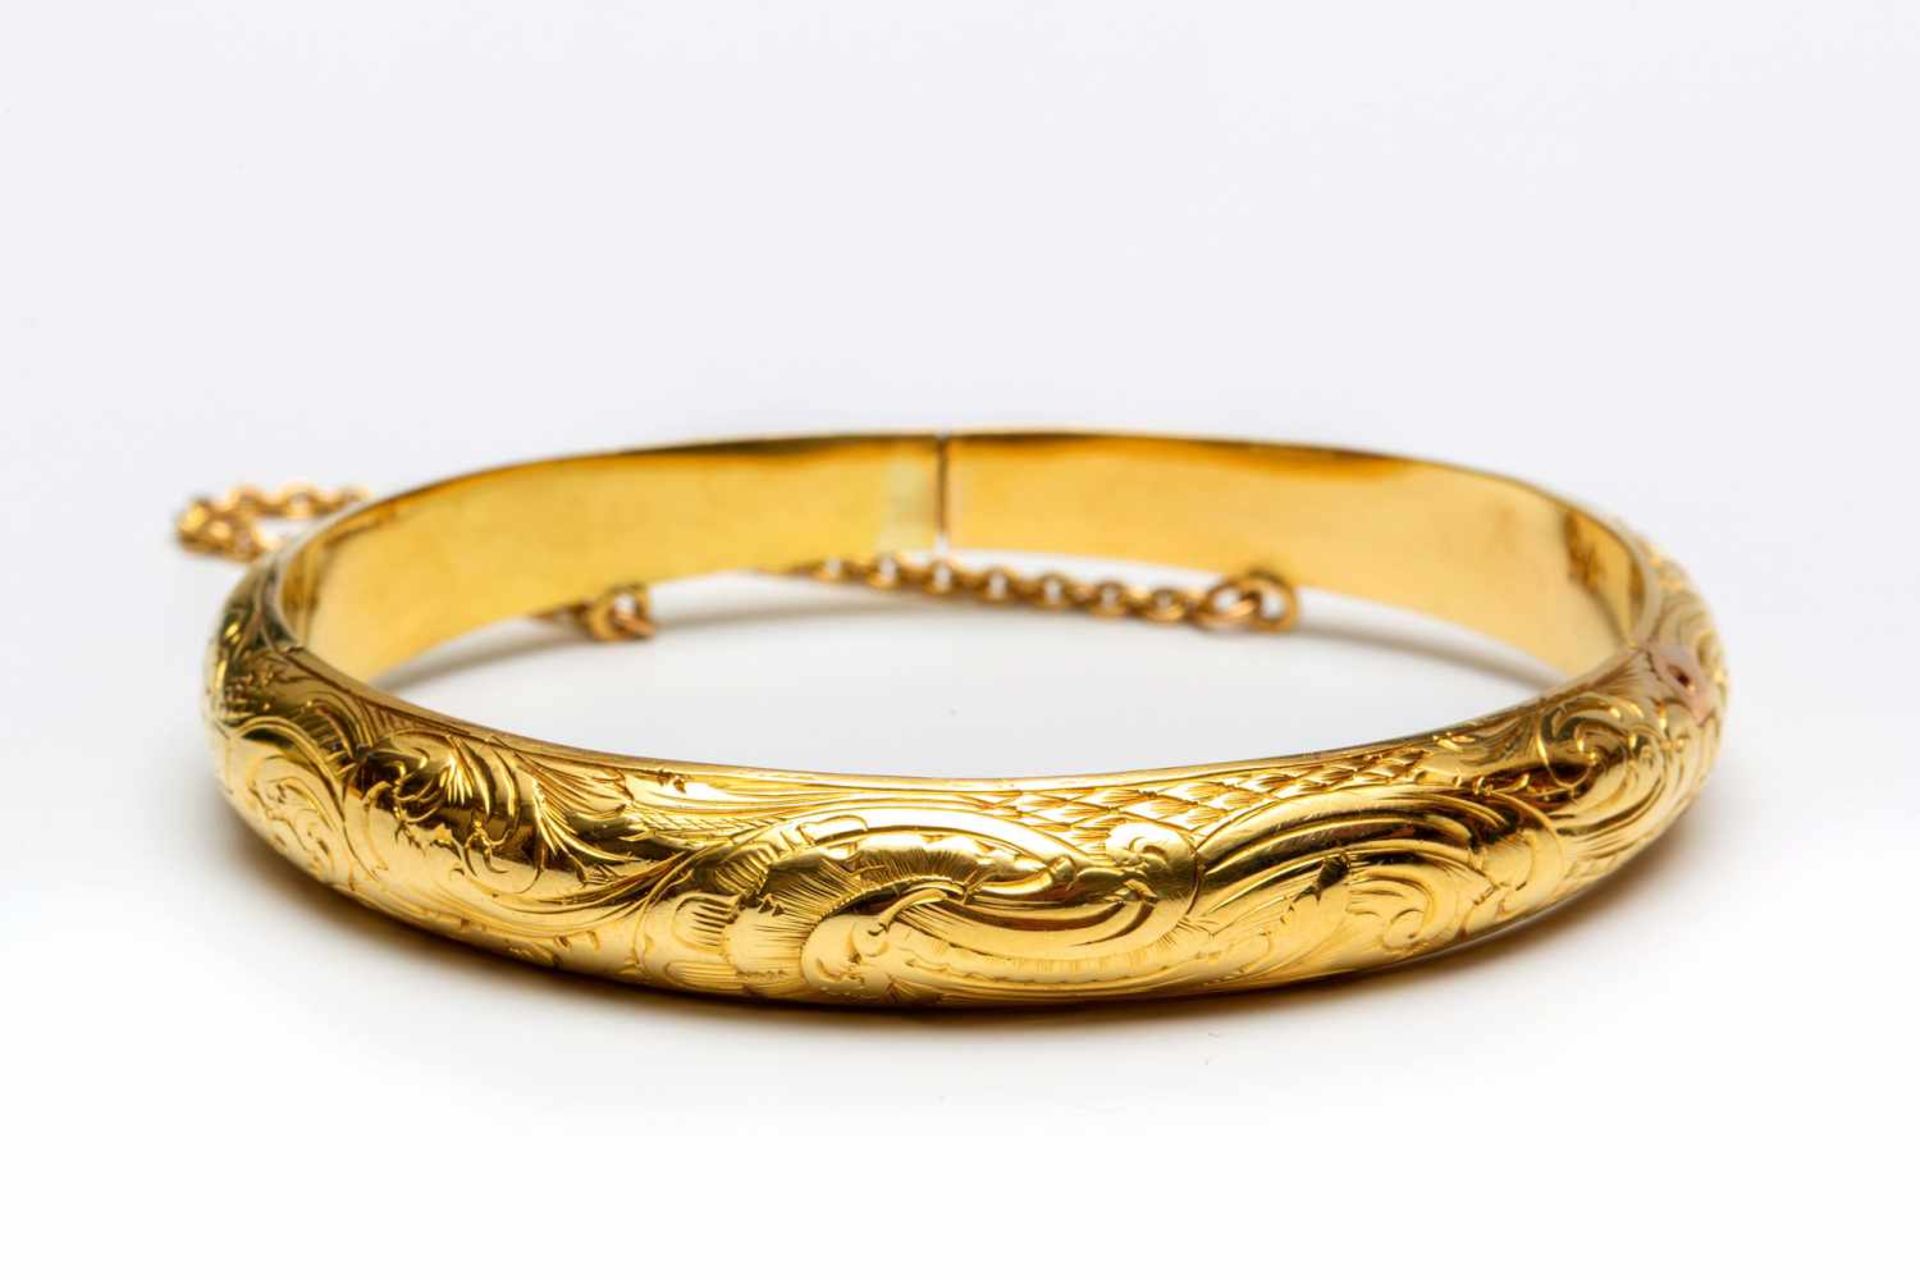 14krt. Gouden stijve armband met florale motieven versierd. Met dubbel scharnierpunt., netto 13,2